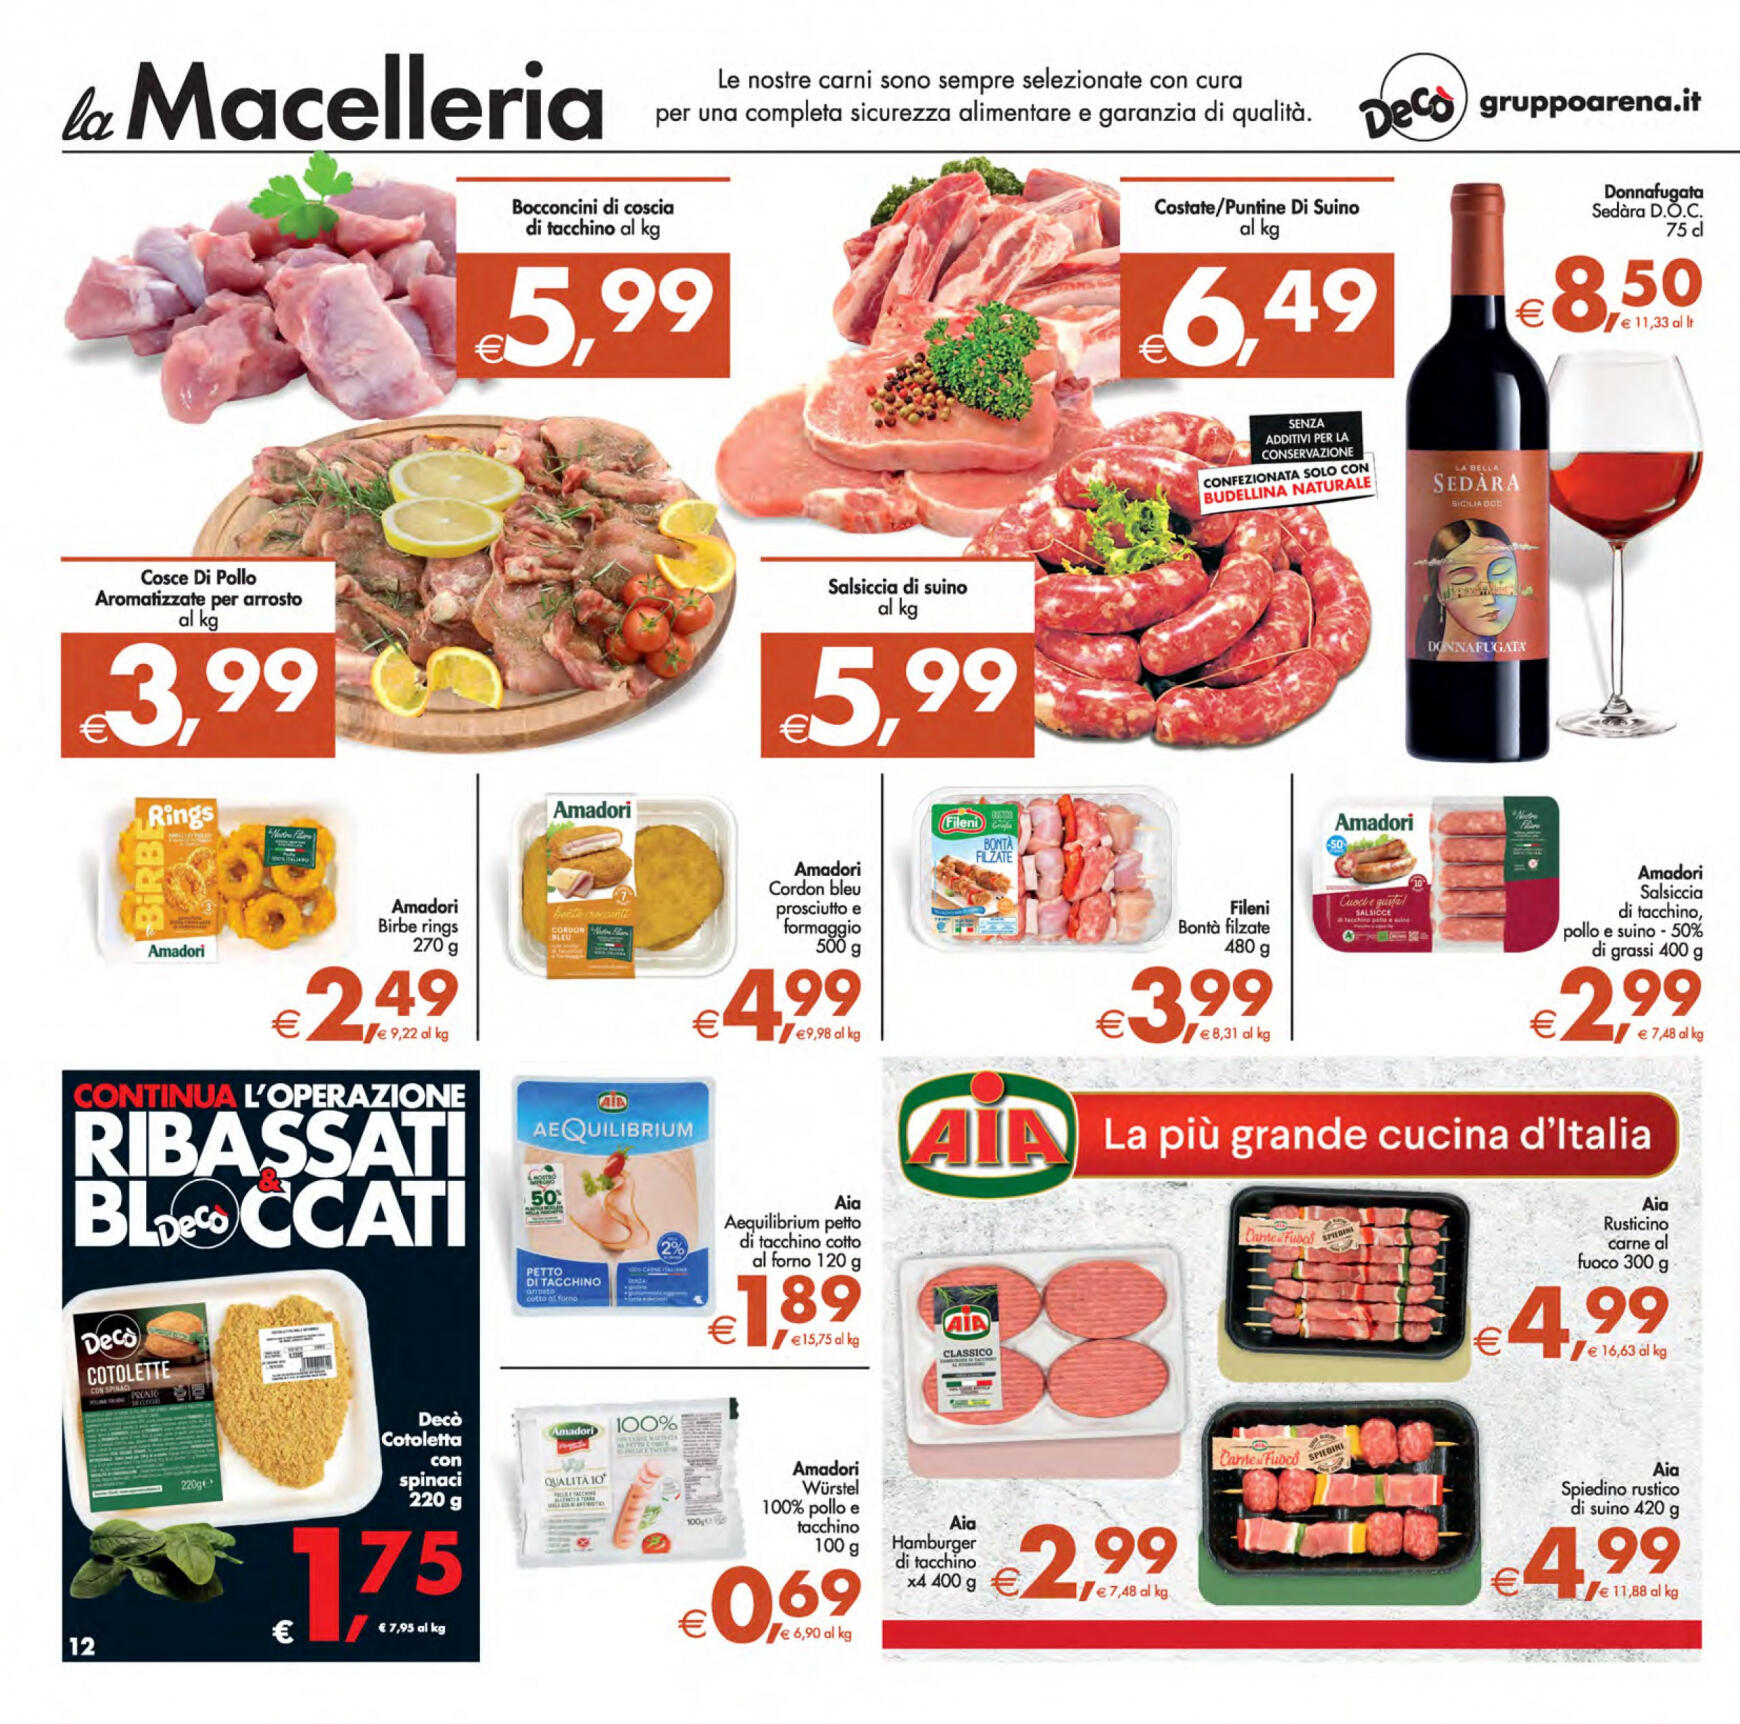 deco - Nuovo volantino Decò - Supermercati/Maxistore/Local 23.04. - 02.05. - page: 12